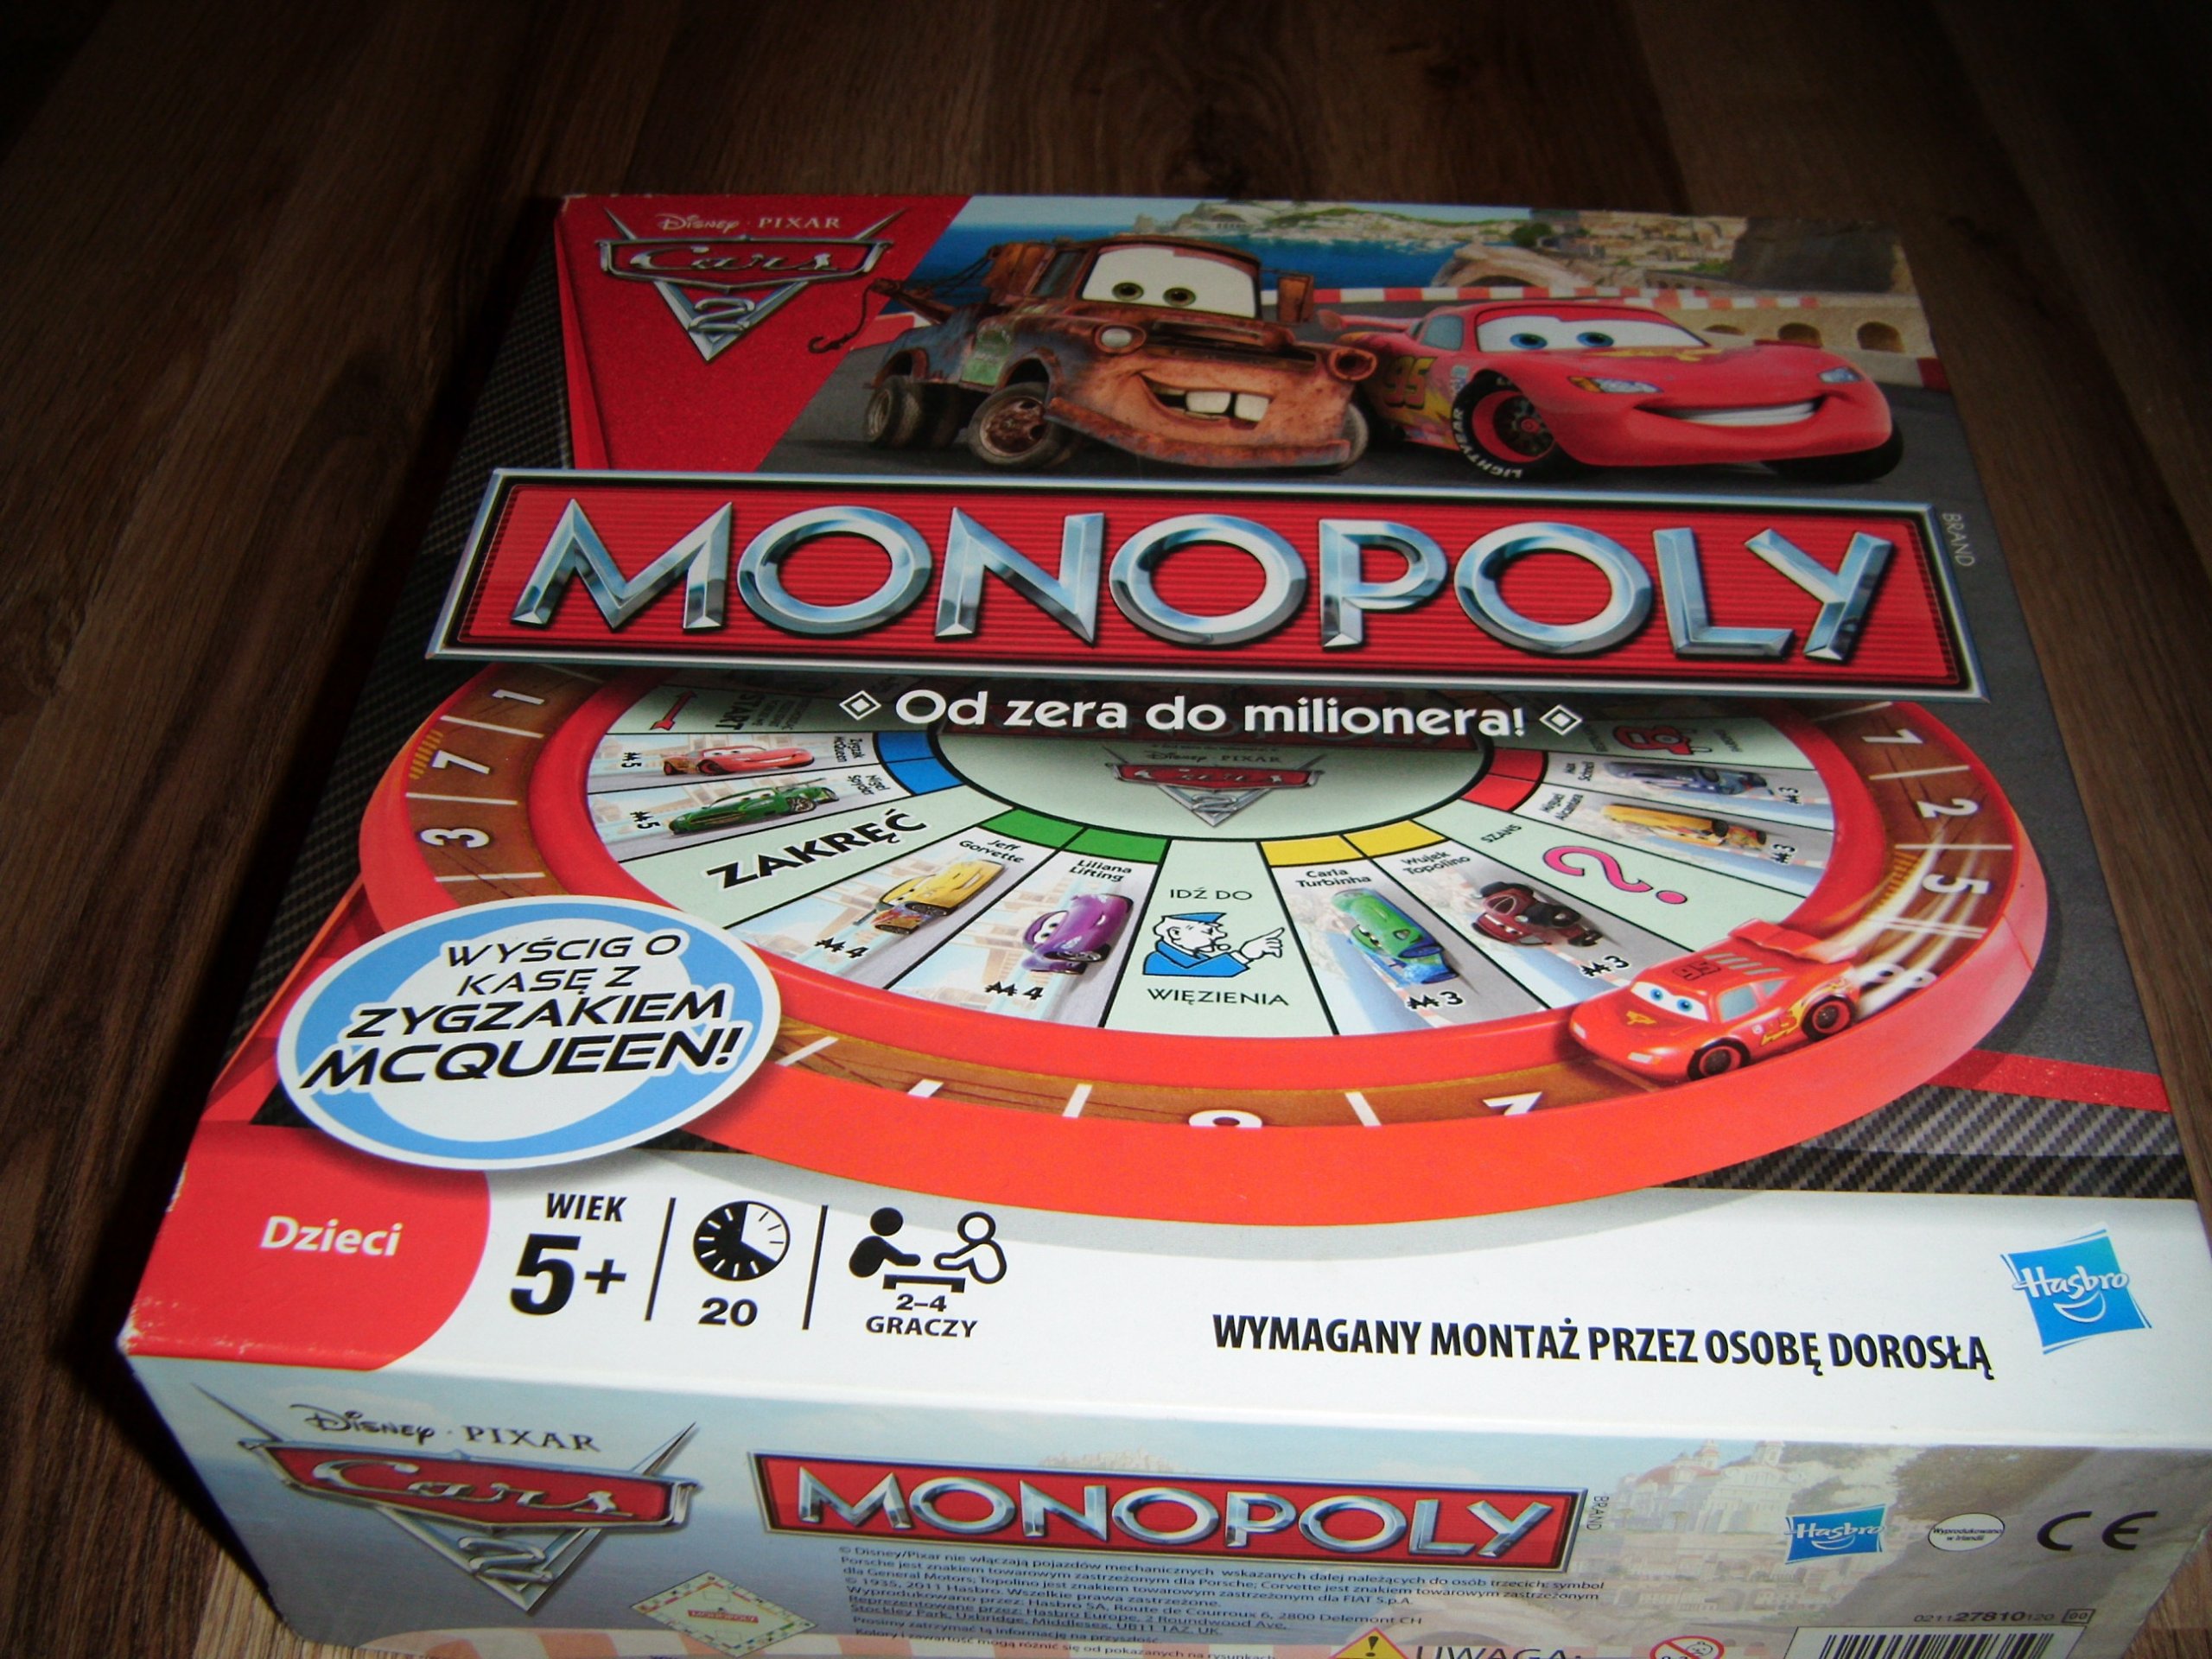 Monopoly Auta 2 Monopoly Cars 2 Gra Rodzinna 7026742330 Oficjalne Archiwum Allegro